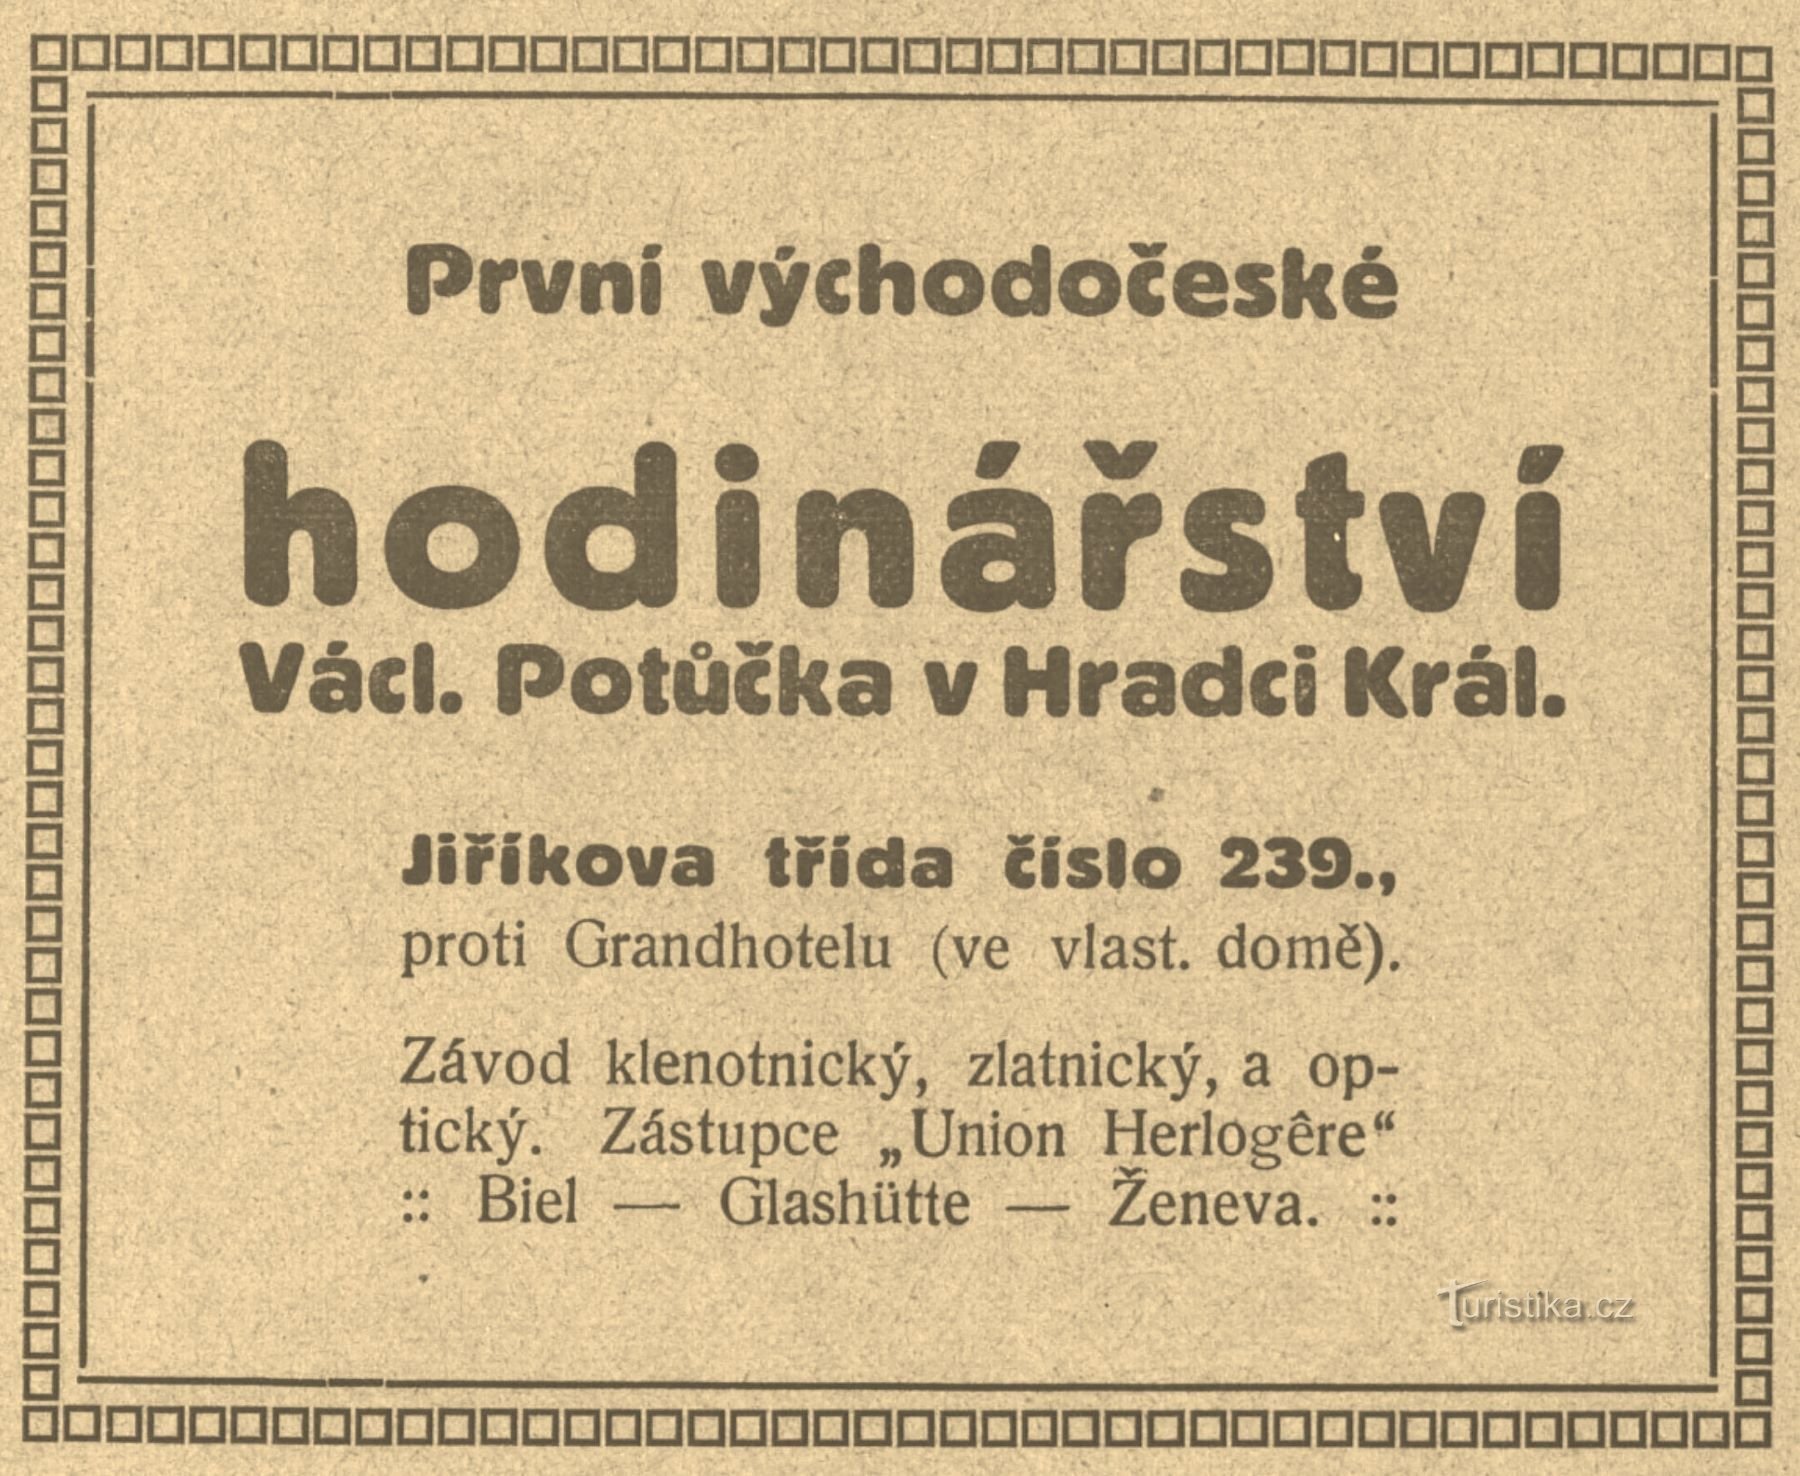 Periodreklam för Potůčeks urmakarföretag från 1911